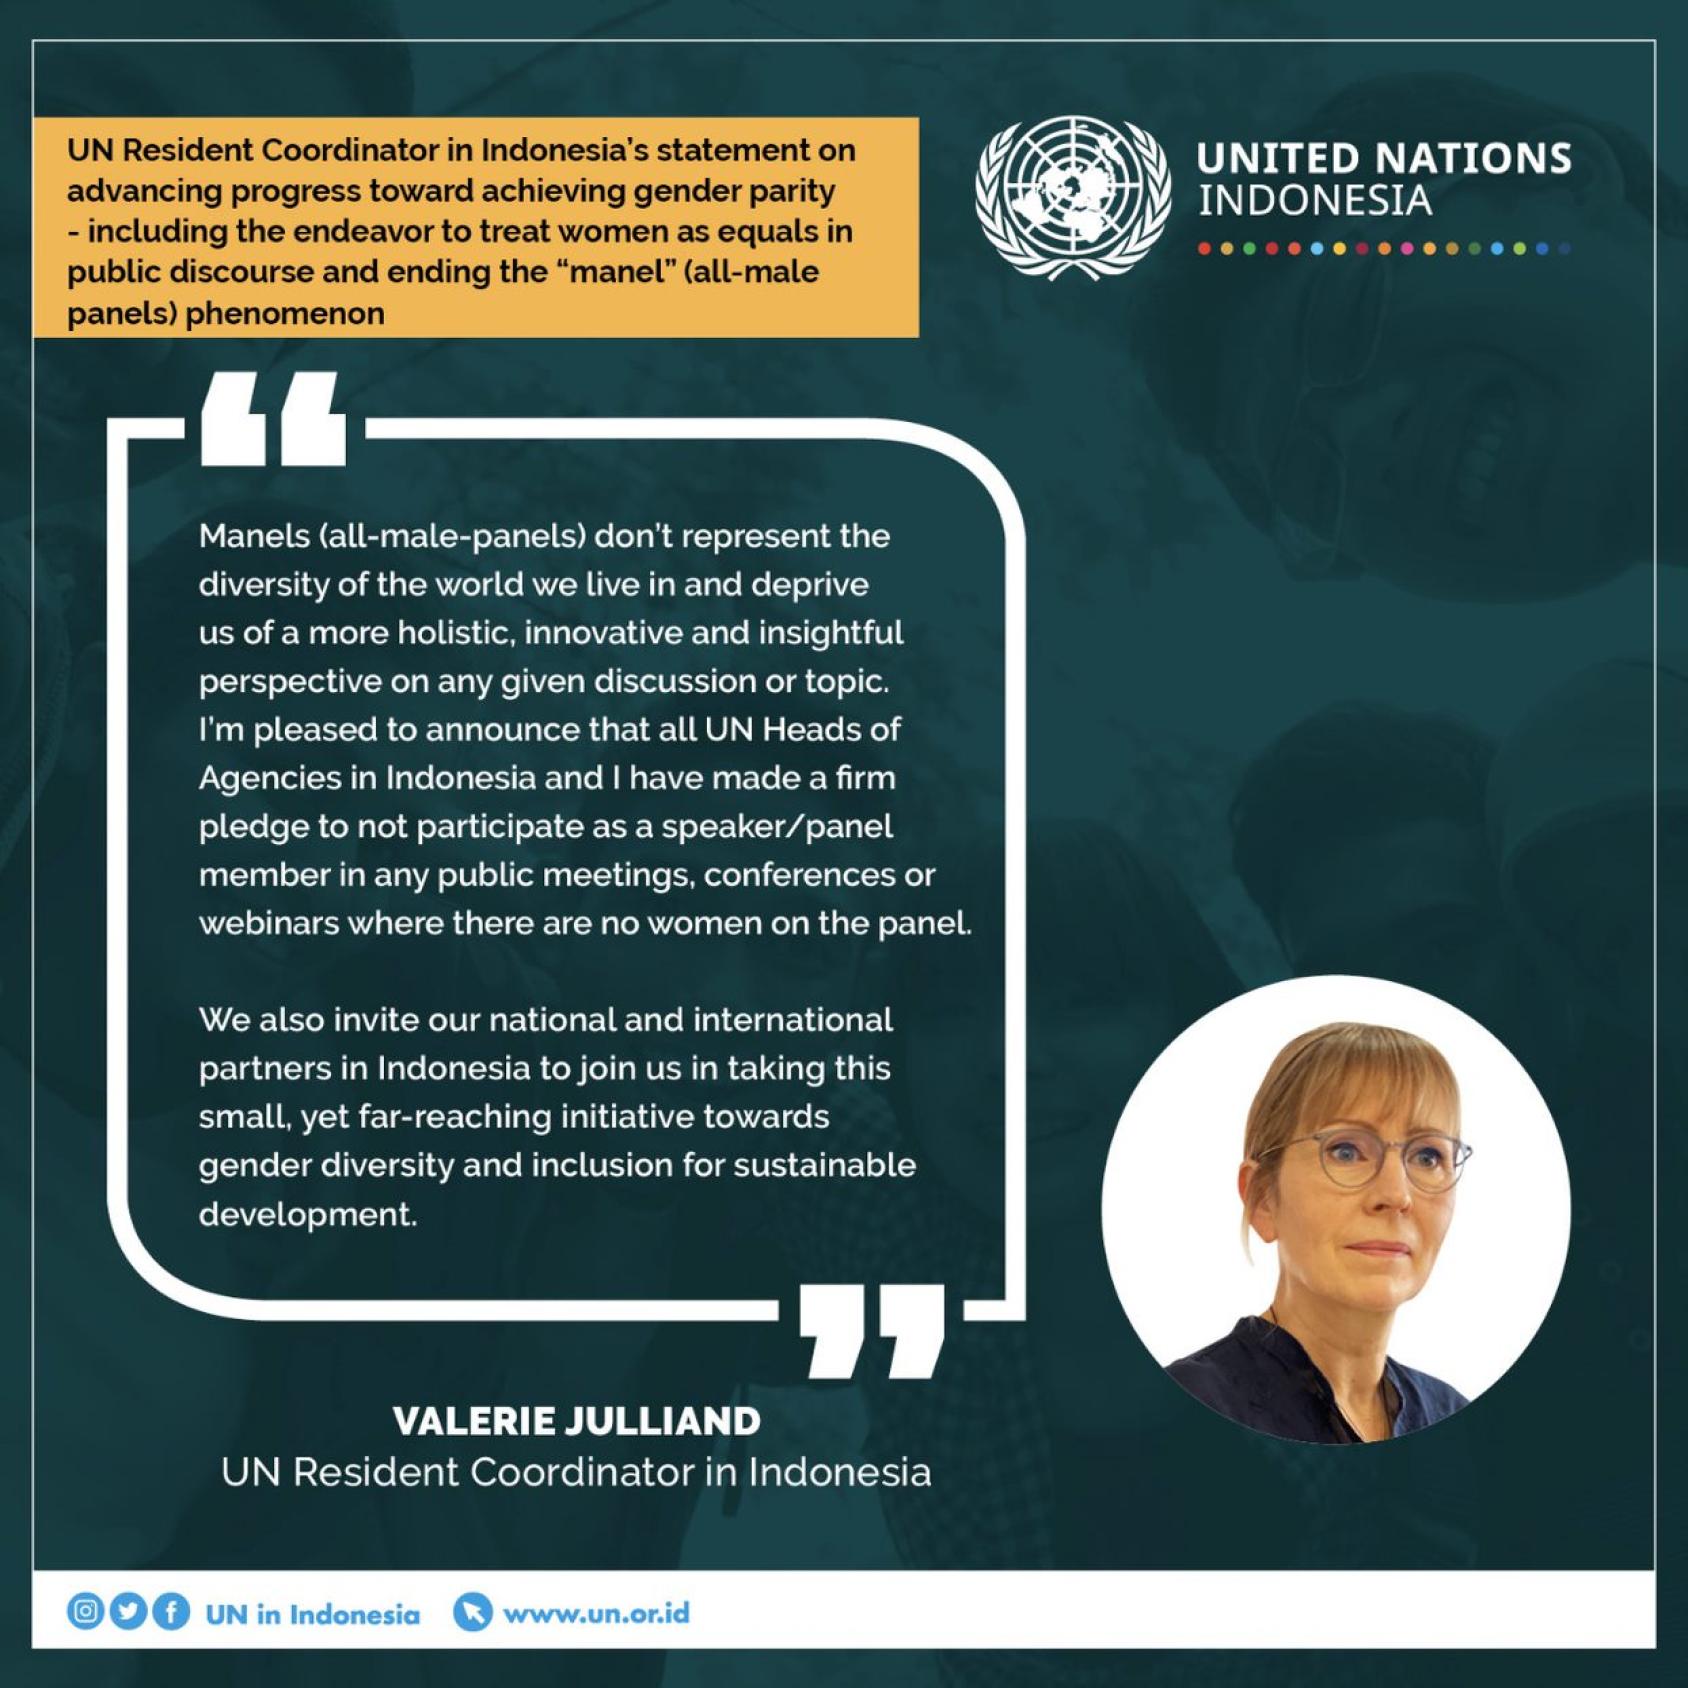 Image d'un écran vert où figurent le logo de l'ONU en Indonésie ainsi que la photo de la Coordonnatrice résidente de l'ONU et sa déclaration, en anglais, sur les panels de discussion 100% masculins.